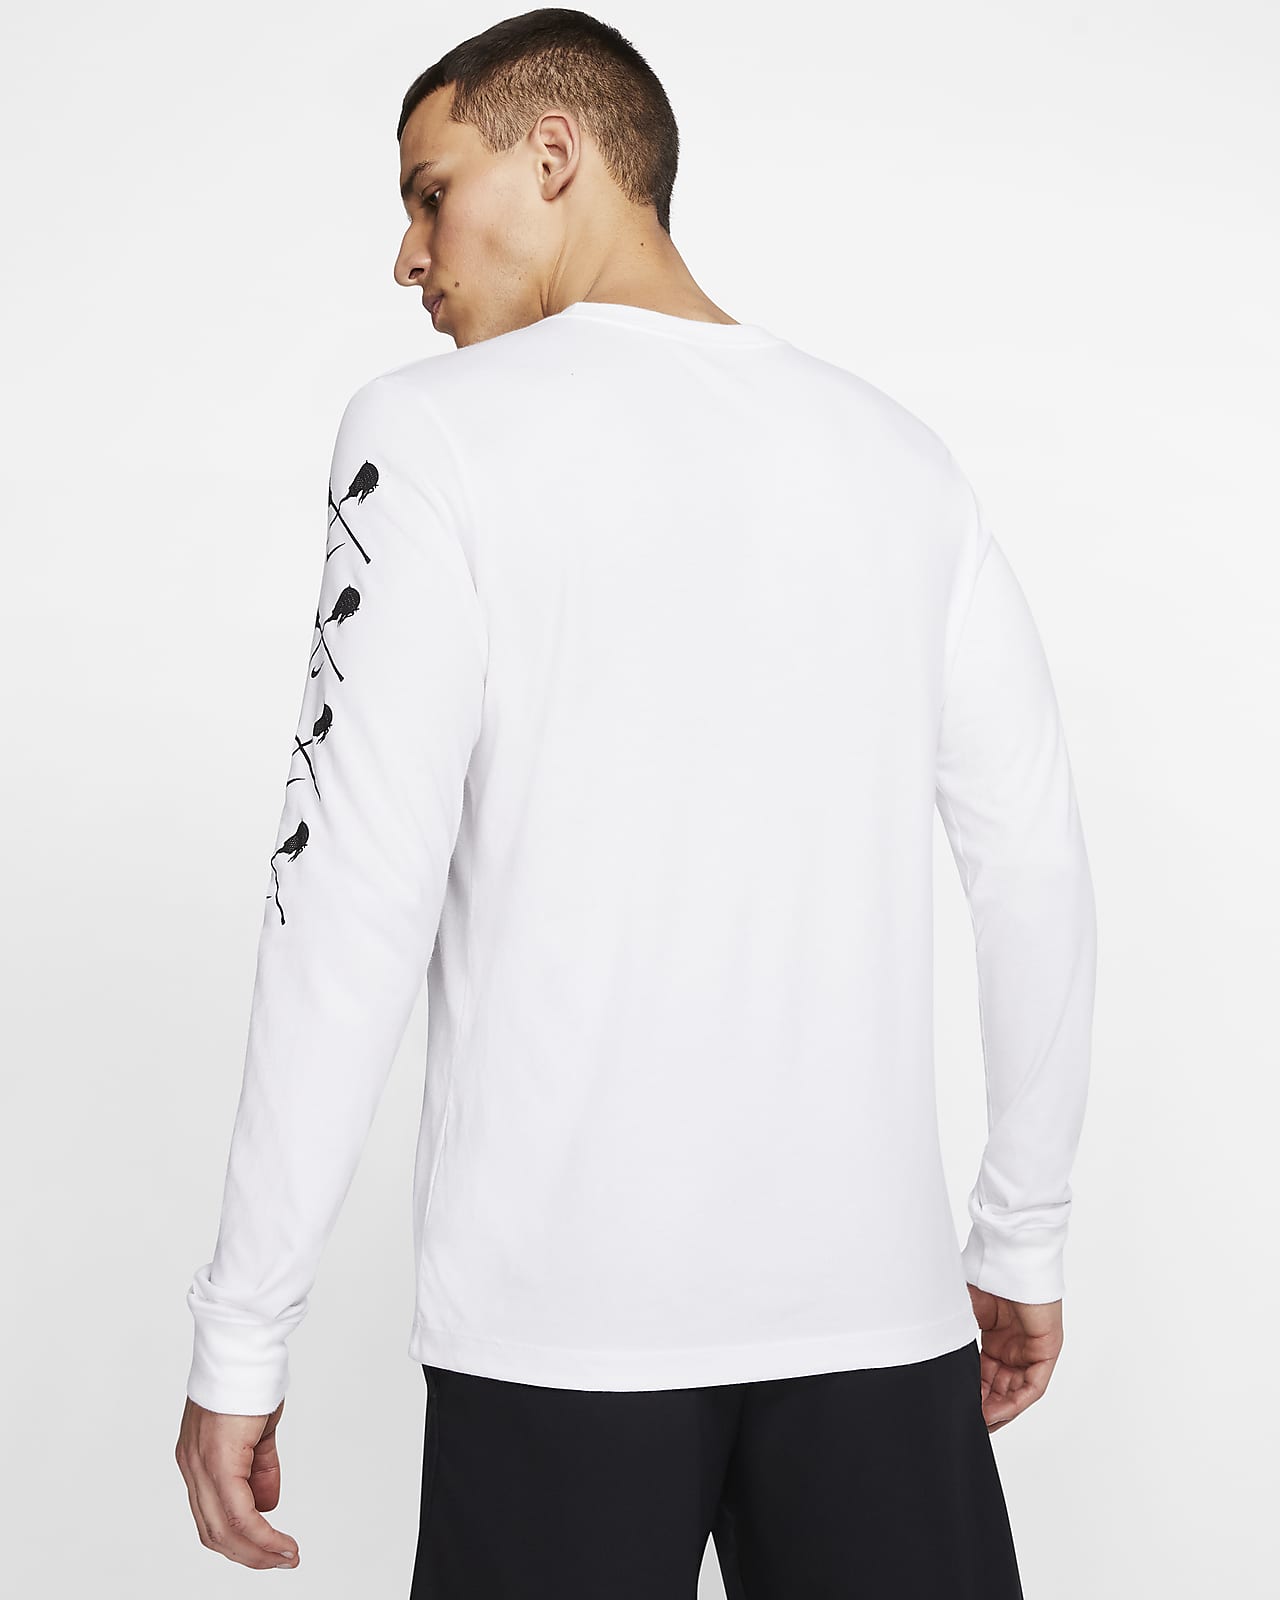 Nike Dri-FIT Men's Lacrosse Long-Sleeve T-Shirt. Nike.com